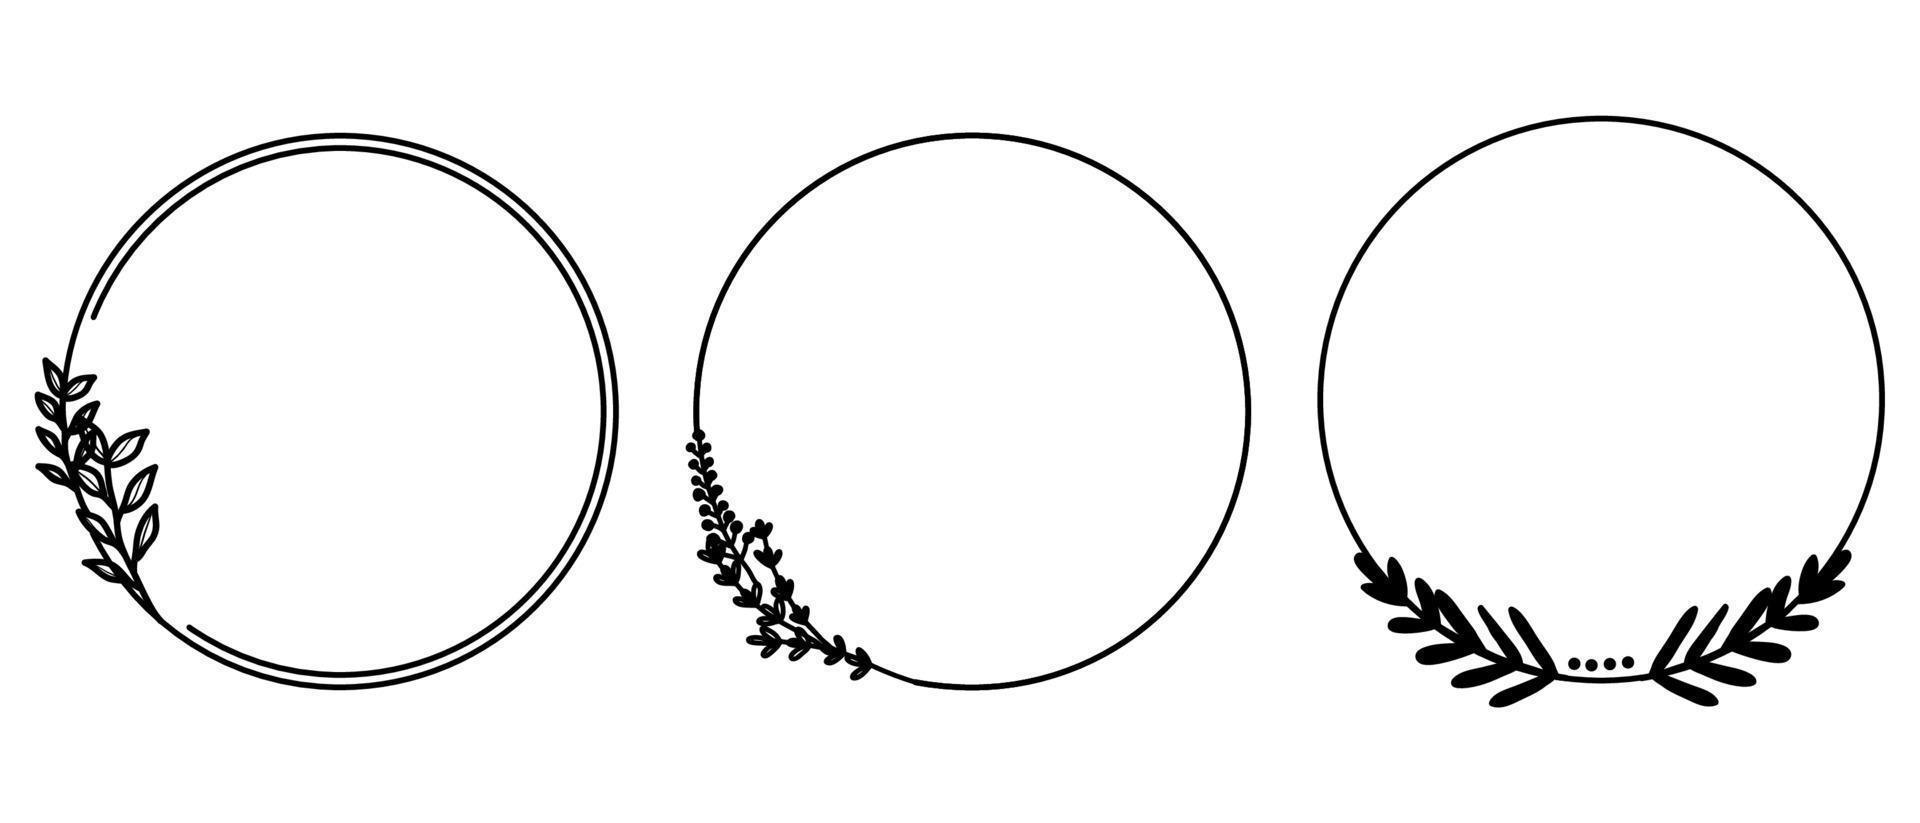 conjunto de marco de jardín de corona de hoja dibujada a mano. vector